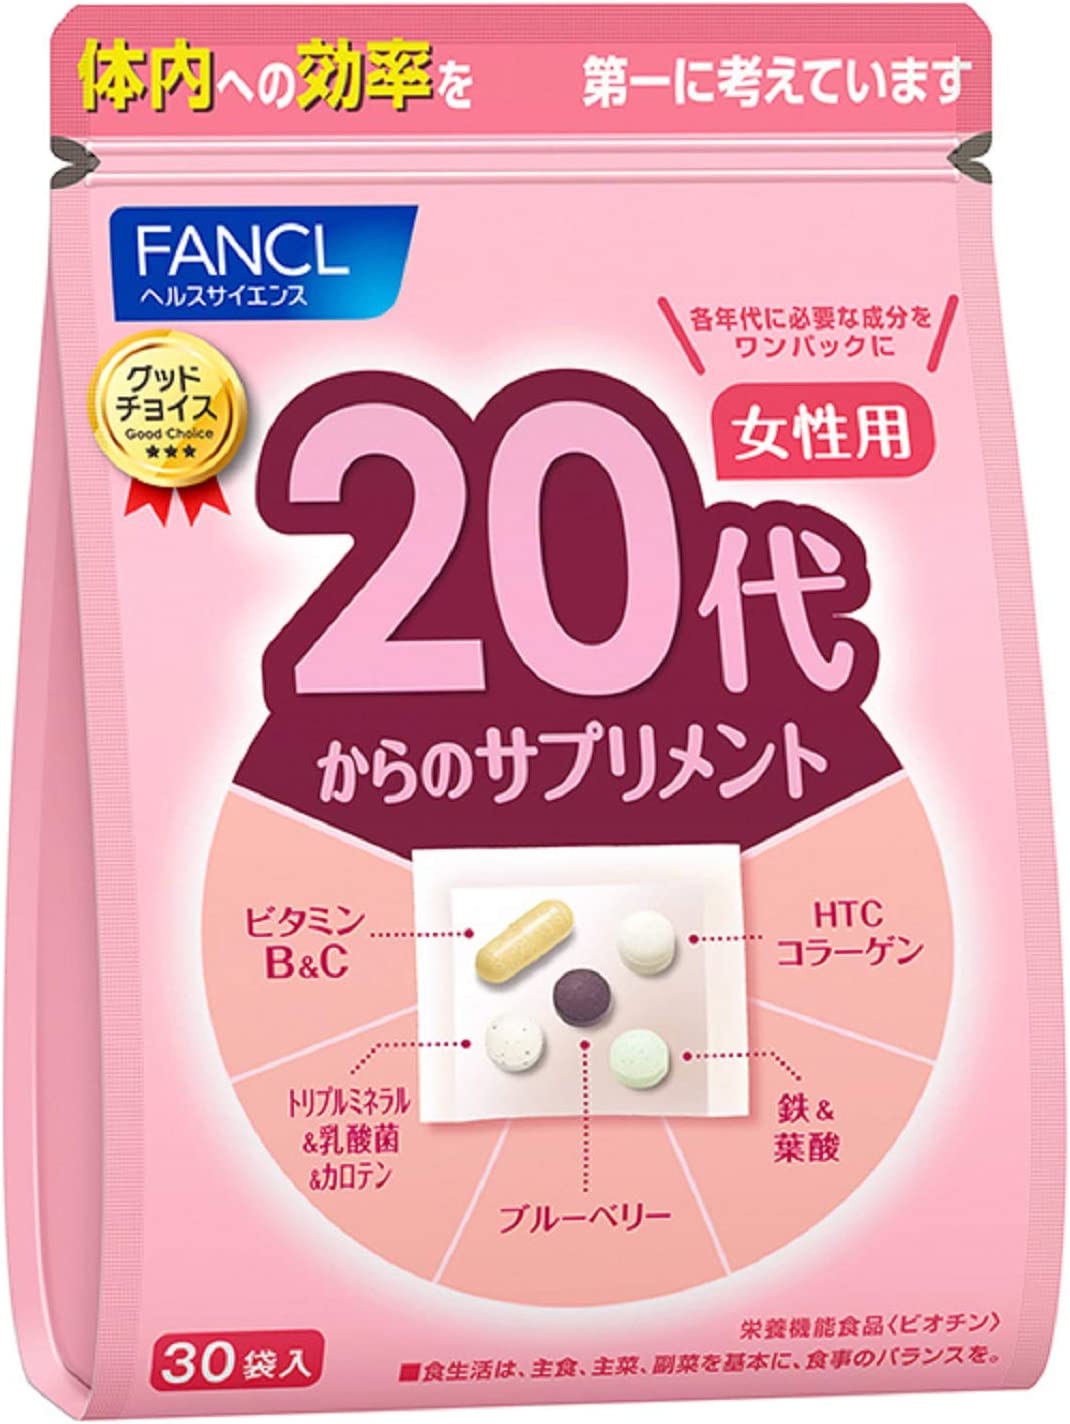 Комплекс витаминов FANCL для женщин старше 20 лет витаминный комплекс fancl для молодых мужчин от 20 до 30 лет 3x30 пакетов